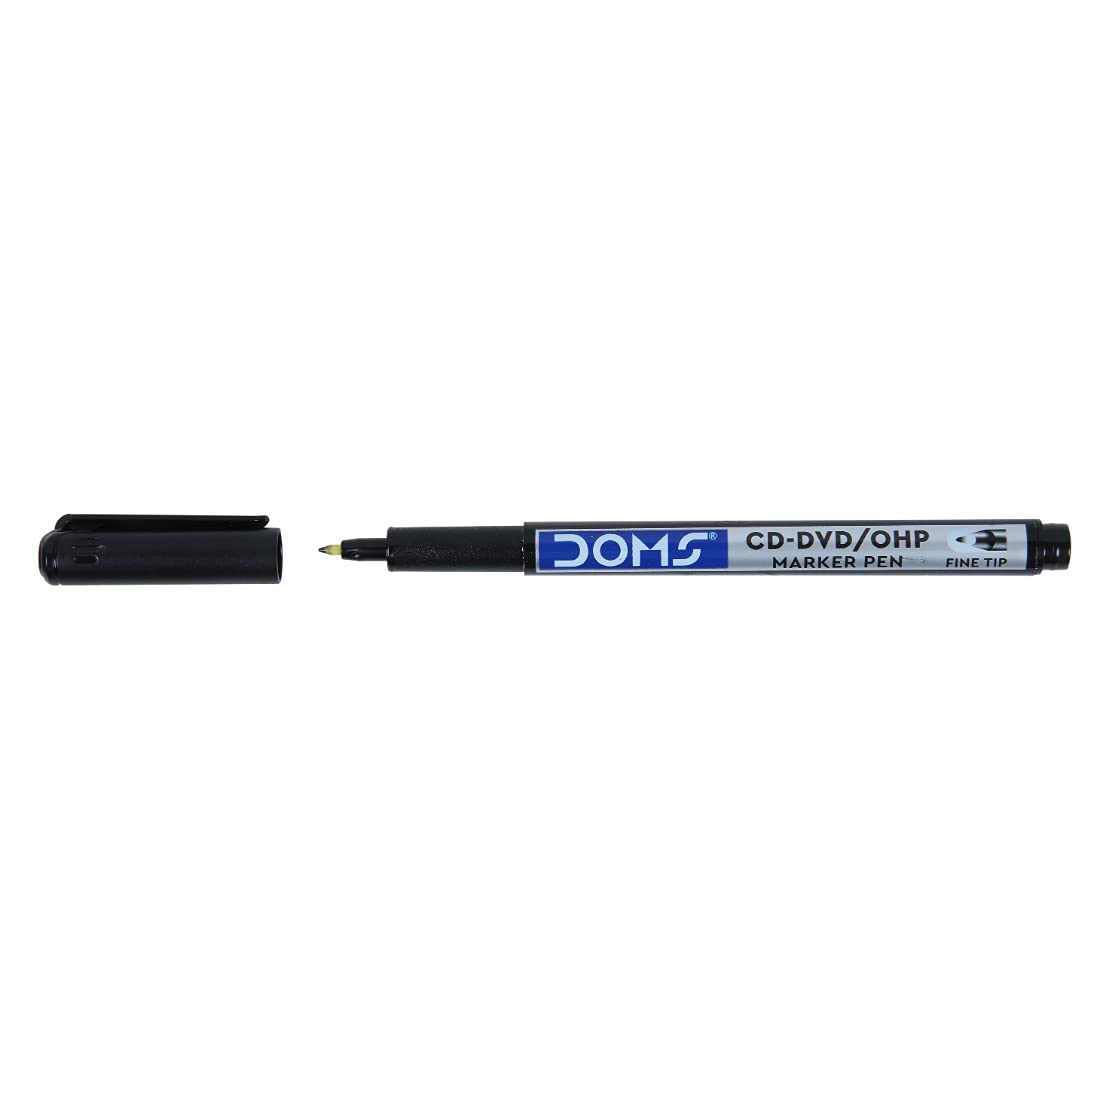 DOMS CD-DVD/OHP Marker Pen - Black